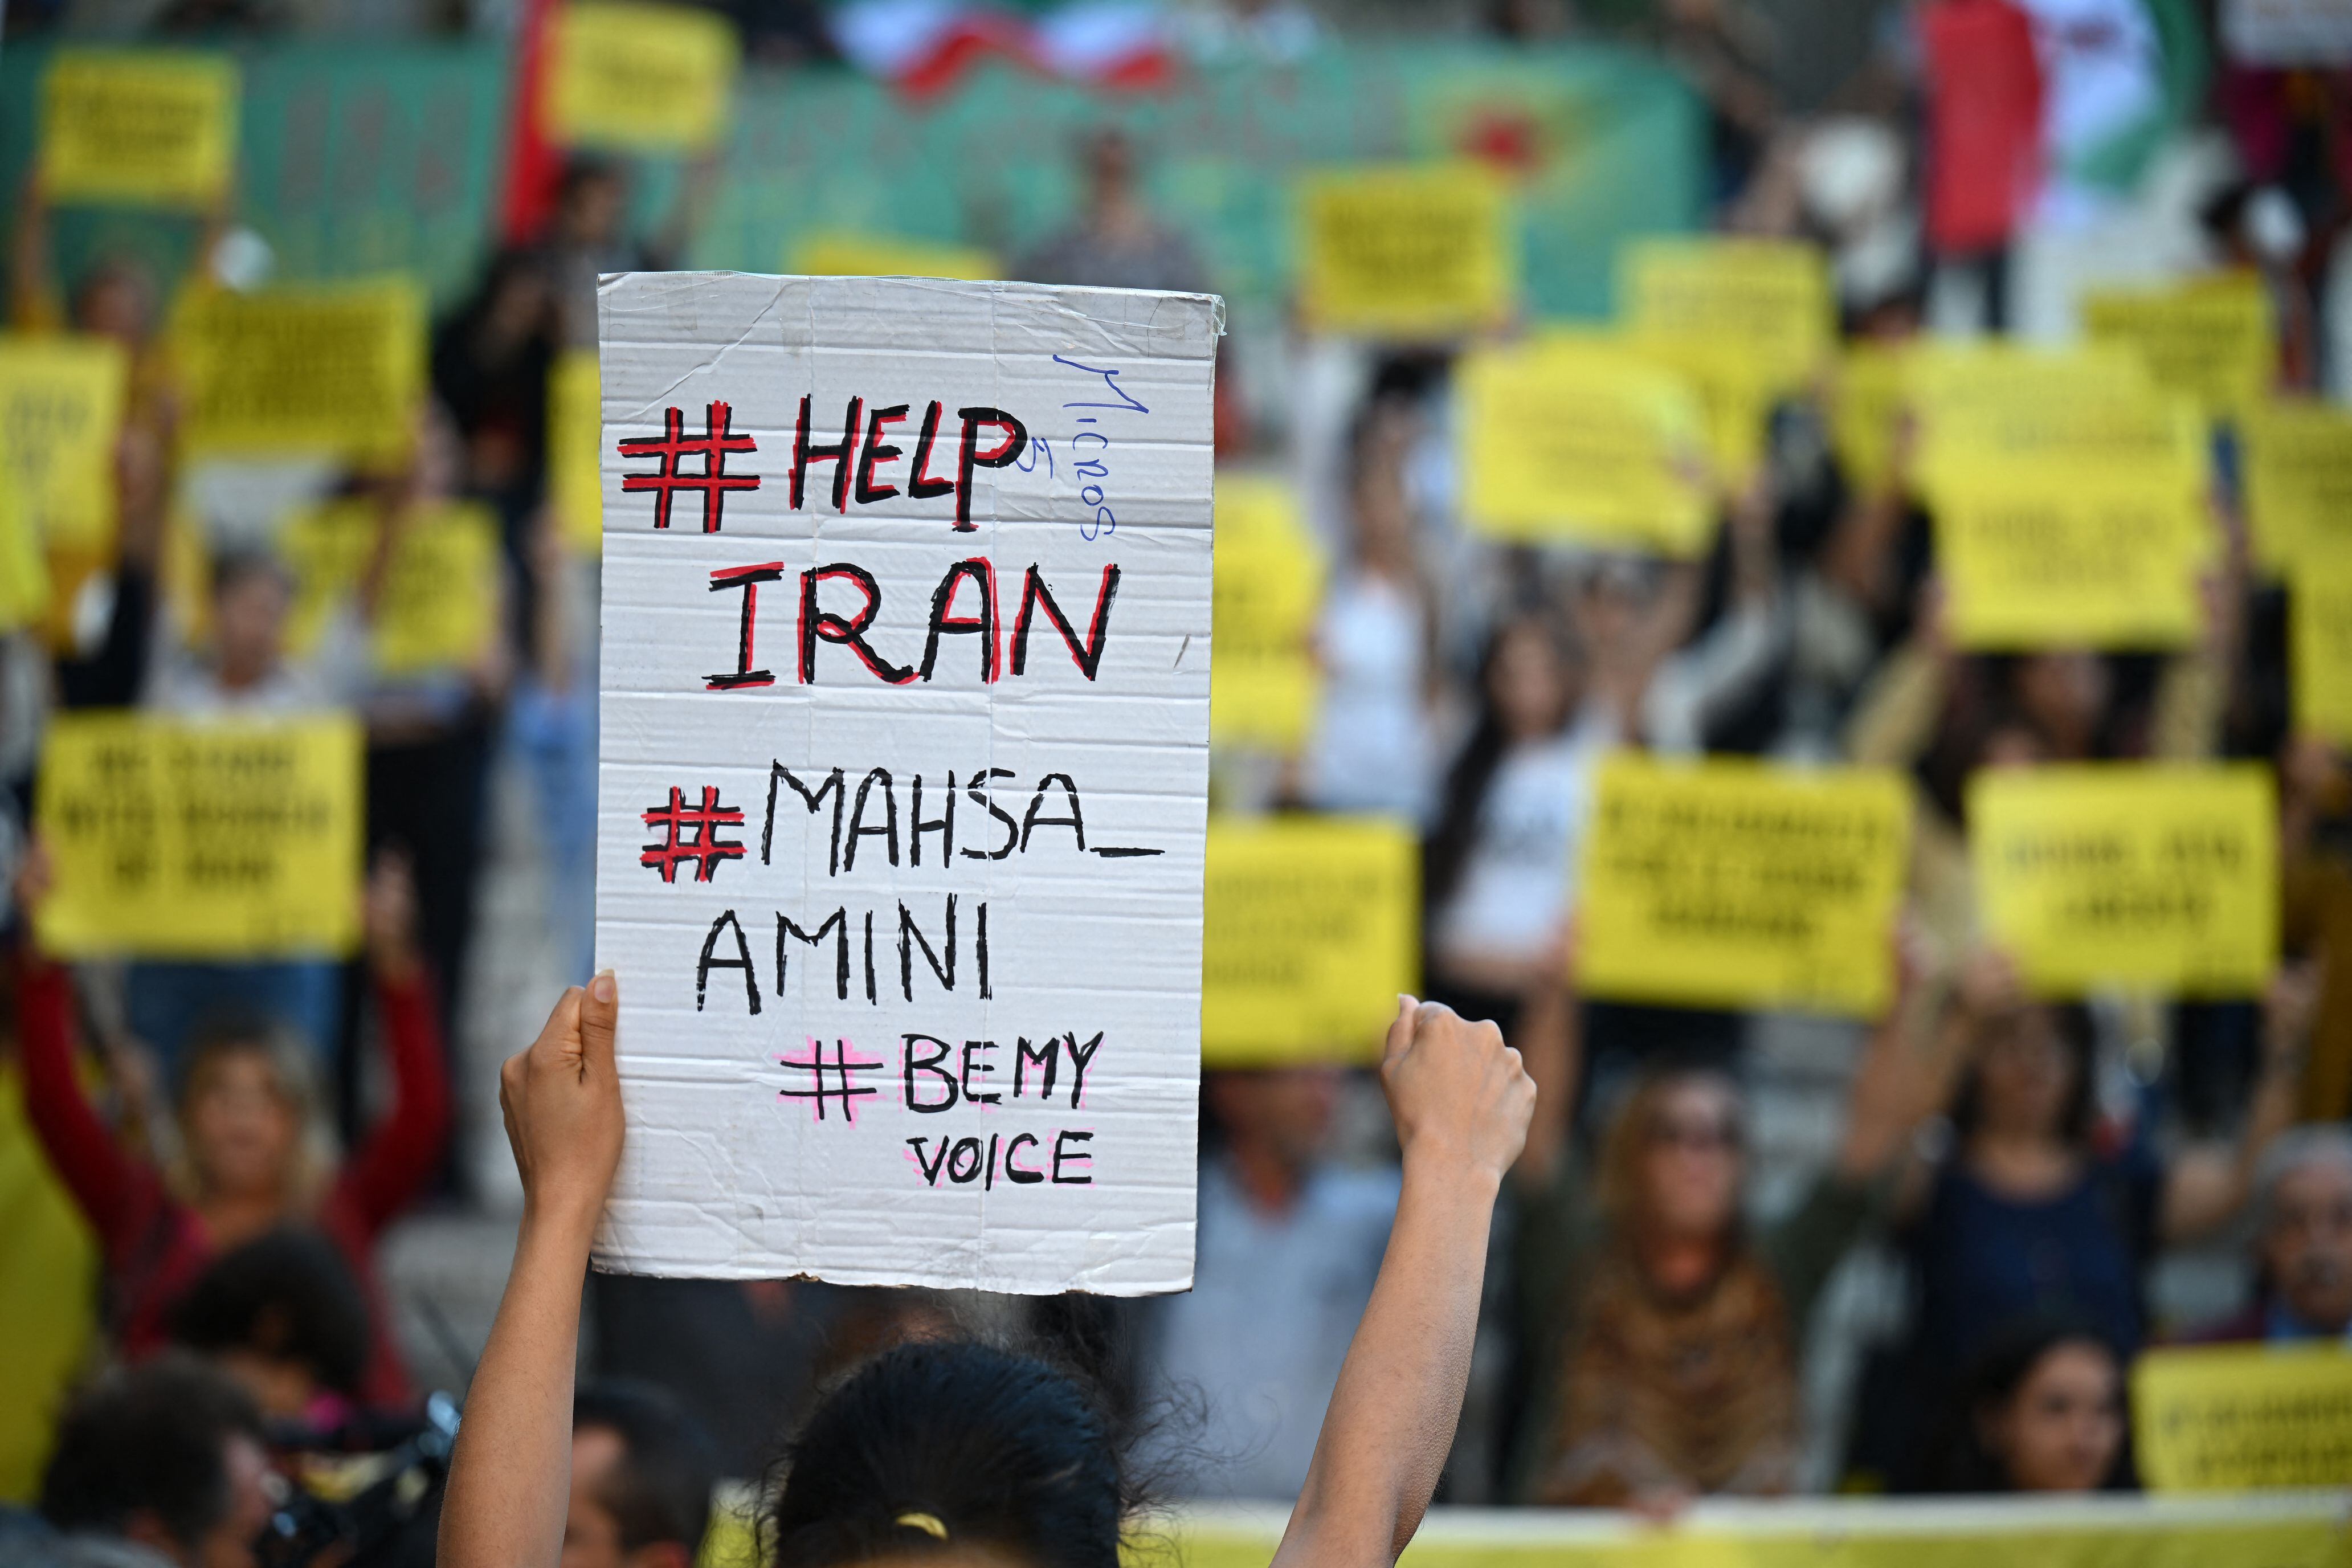 Kurdos iraníes exiliados en Irak bajo el fuego de las protestas por la muerte de Mahsa Amini